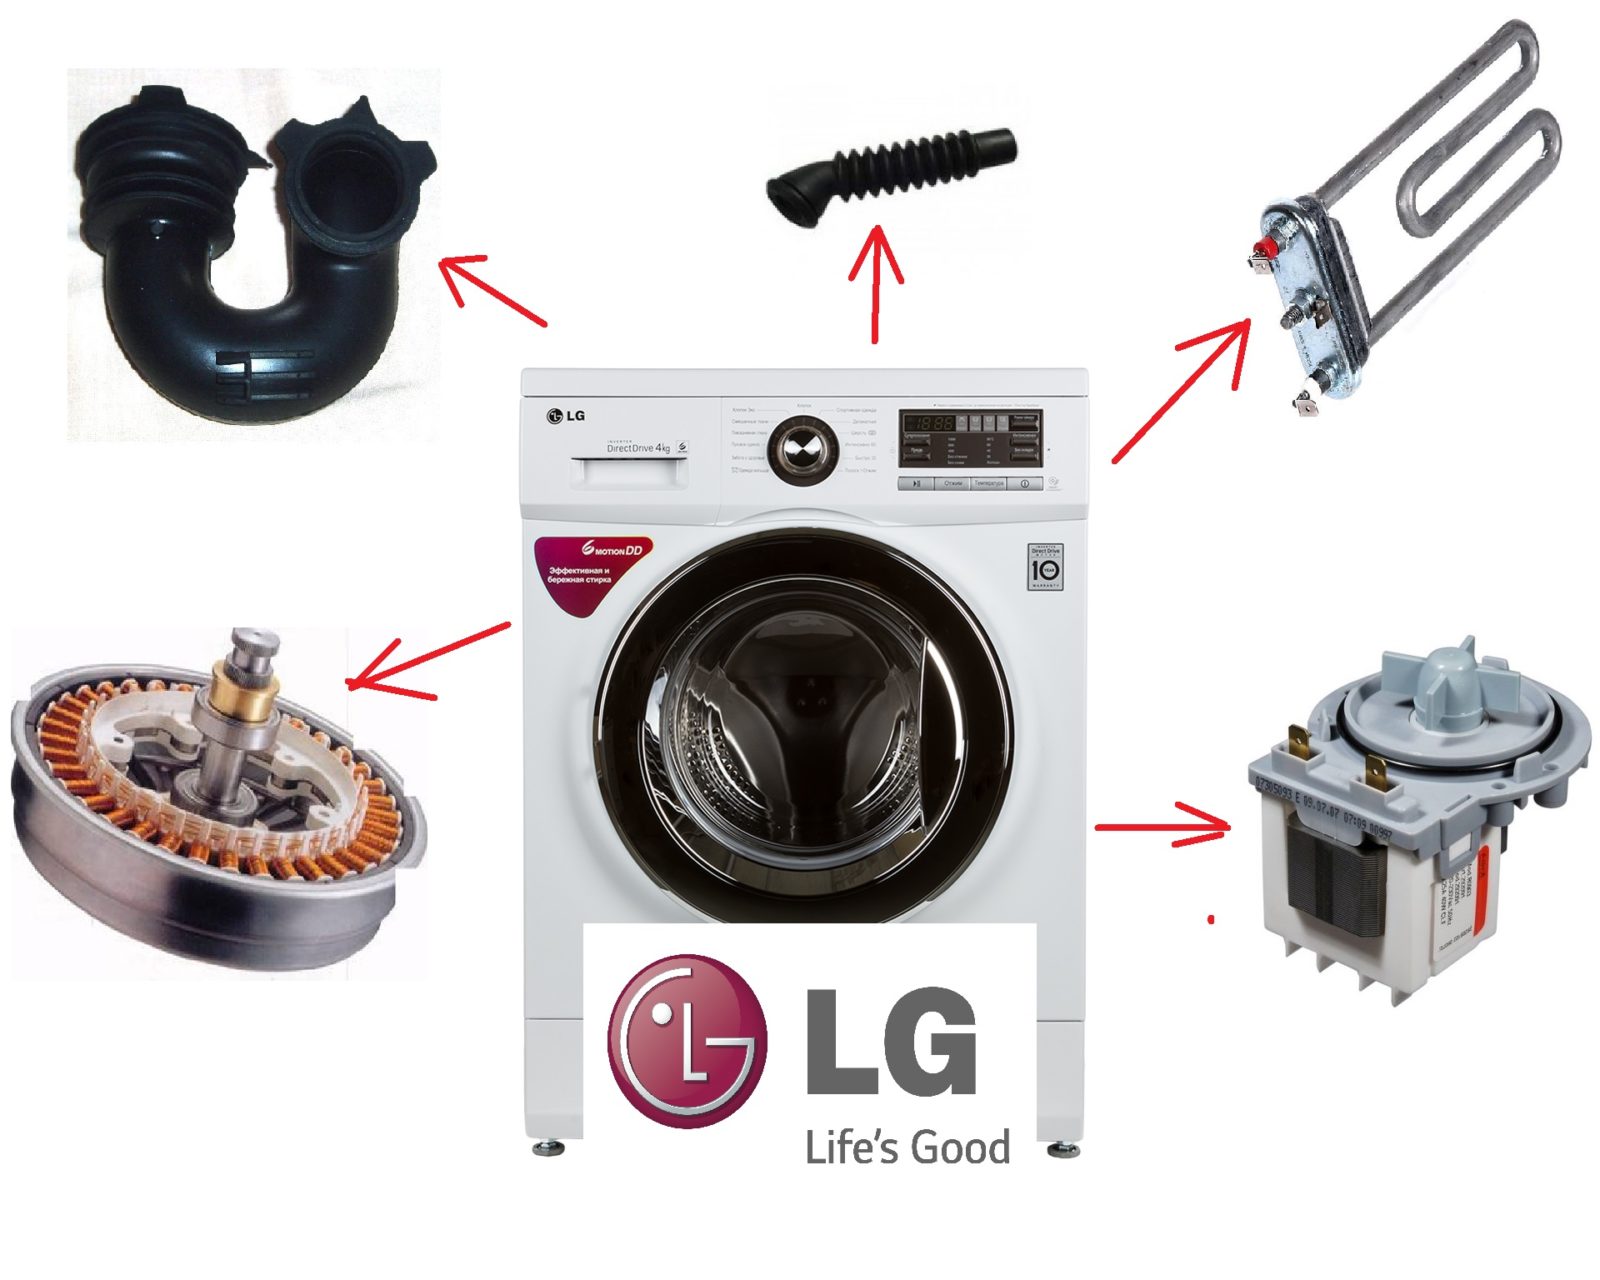 DIY-demontering av LG-tvättmaskinen